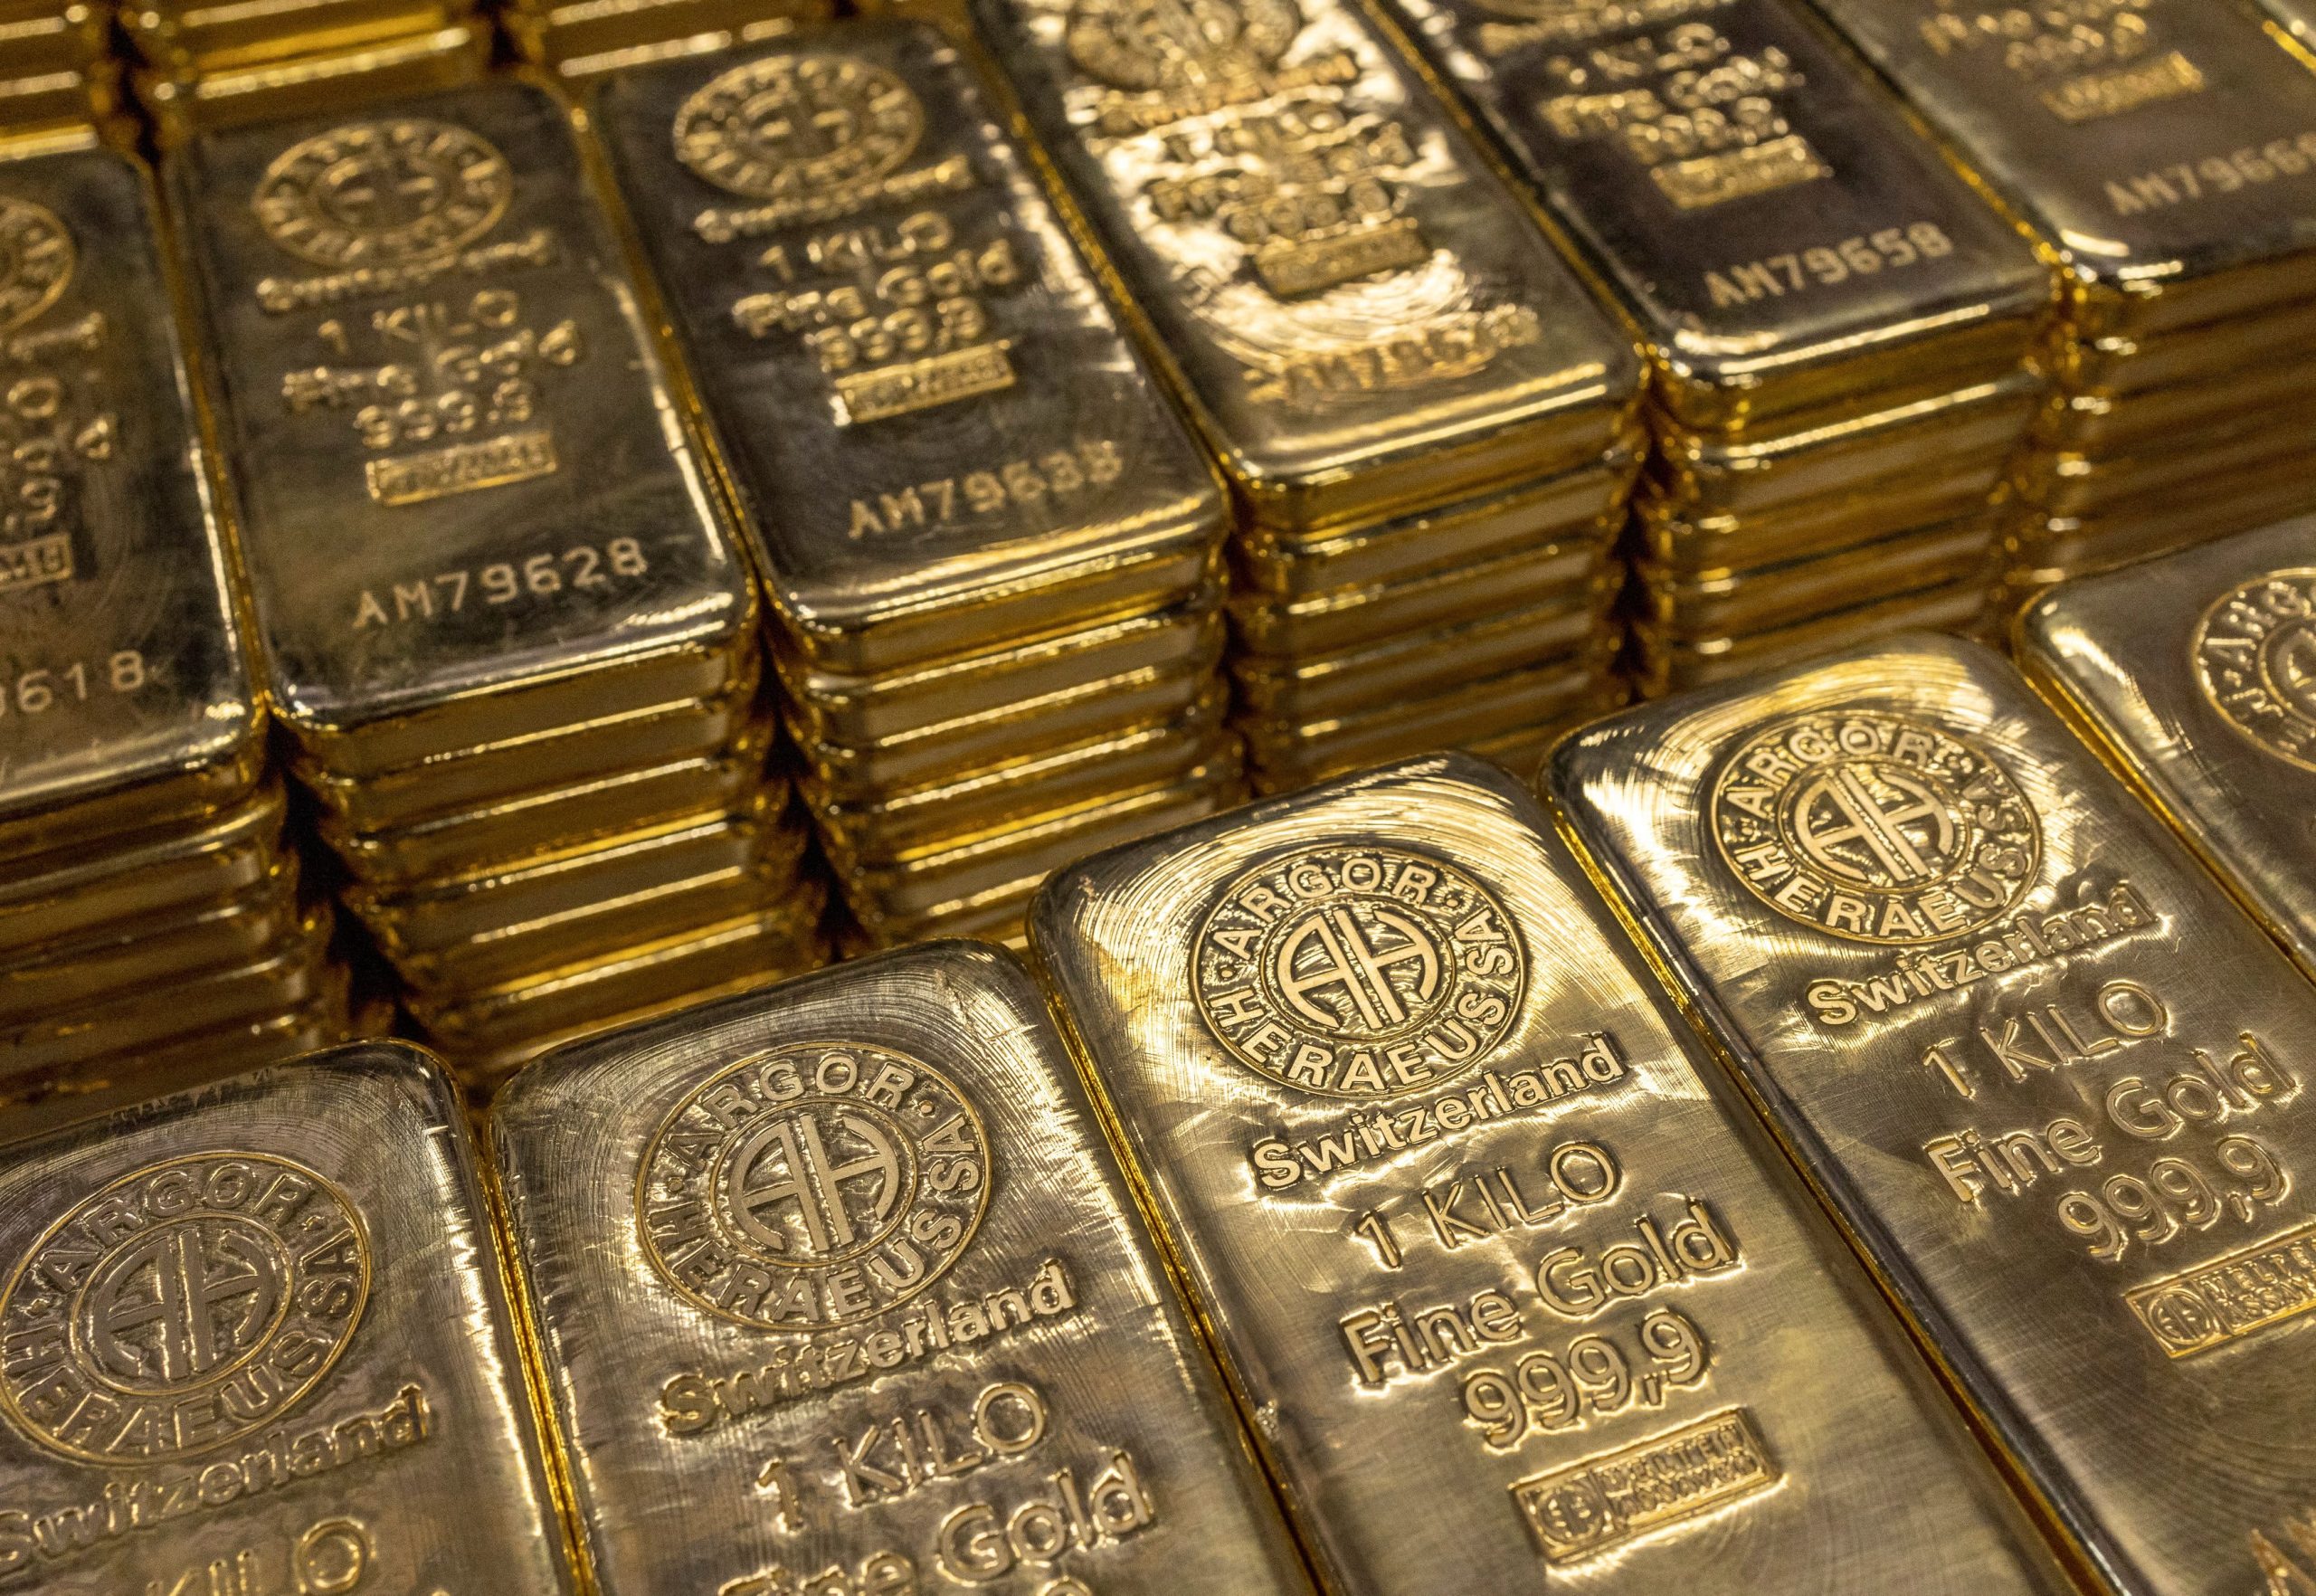 أسعار الذهب ترتفع وسط بيانات أمريكية ضعيفة لكنها تستعد لخسائر أسبوعية حادة 